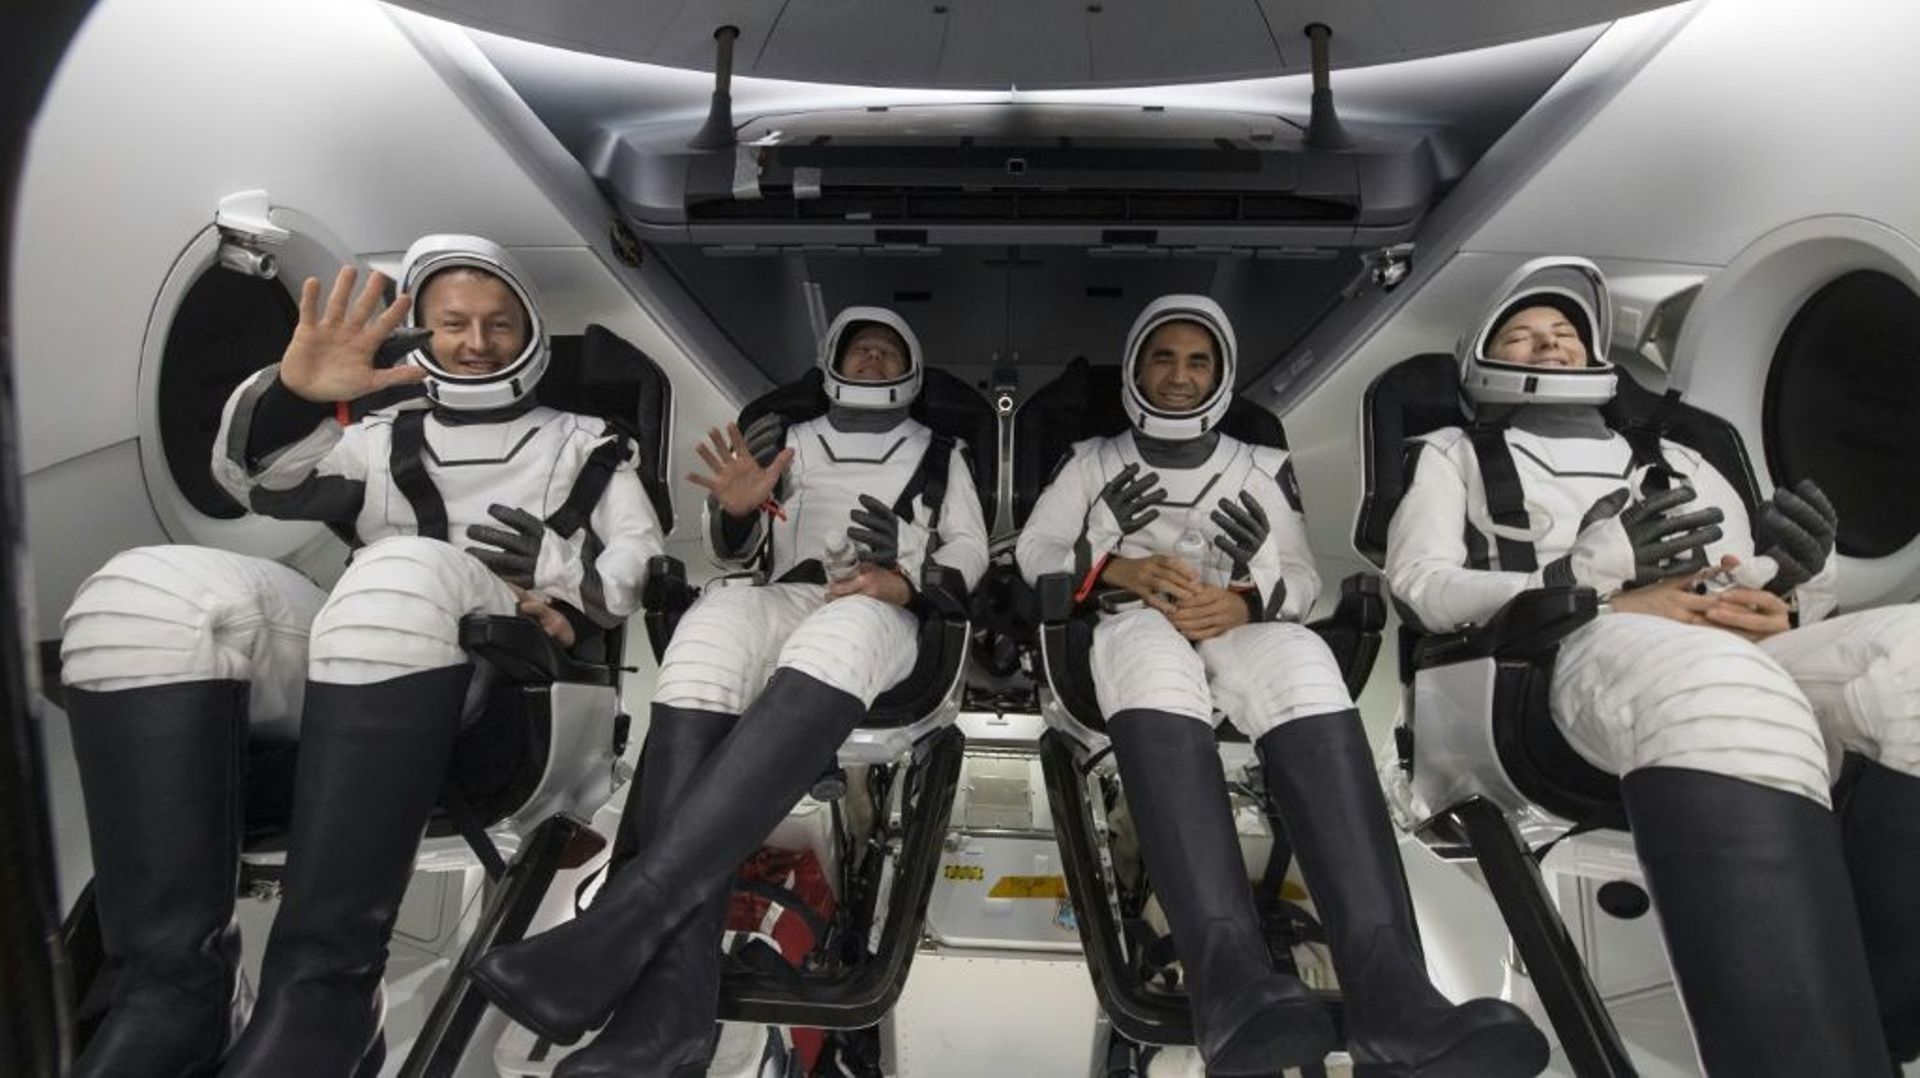 (g-d) Les astronautes Matthais Maurer, Tom Marshburn, Raja Chari et Kayla Barron à l'intérieur de la capsule Dragon de SpaceX après avoir amerri dans les eaux du Golfe du Mexique, le 6 mai 2022 au large de Tampa, en Floride